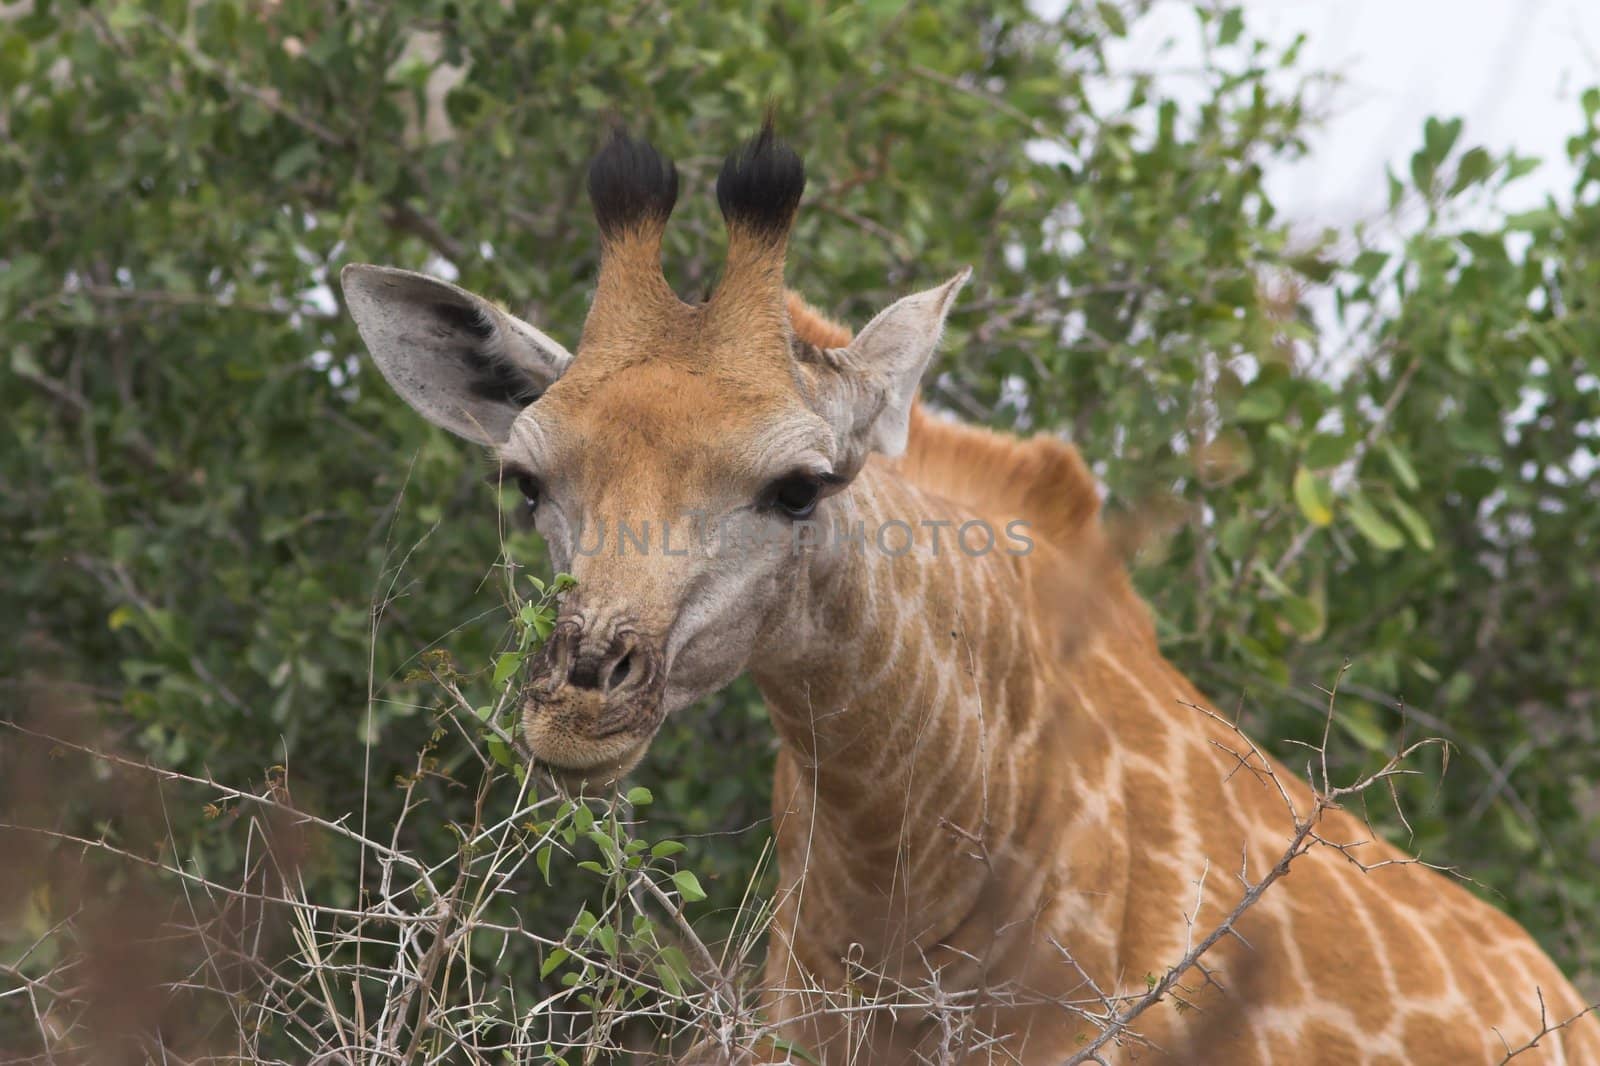 Giraffe feeding by nightowlza